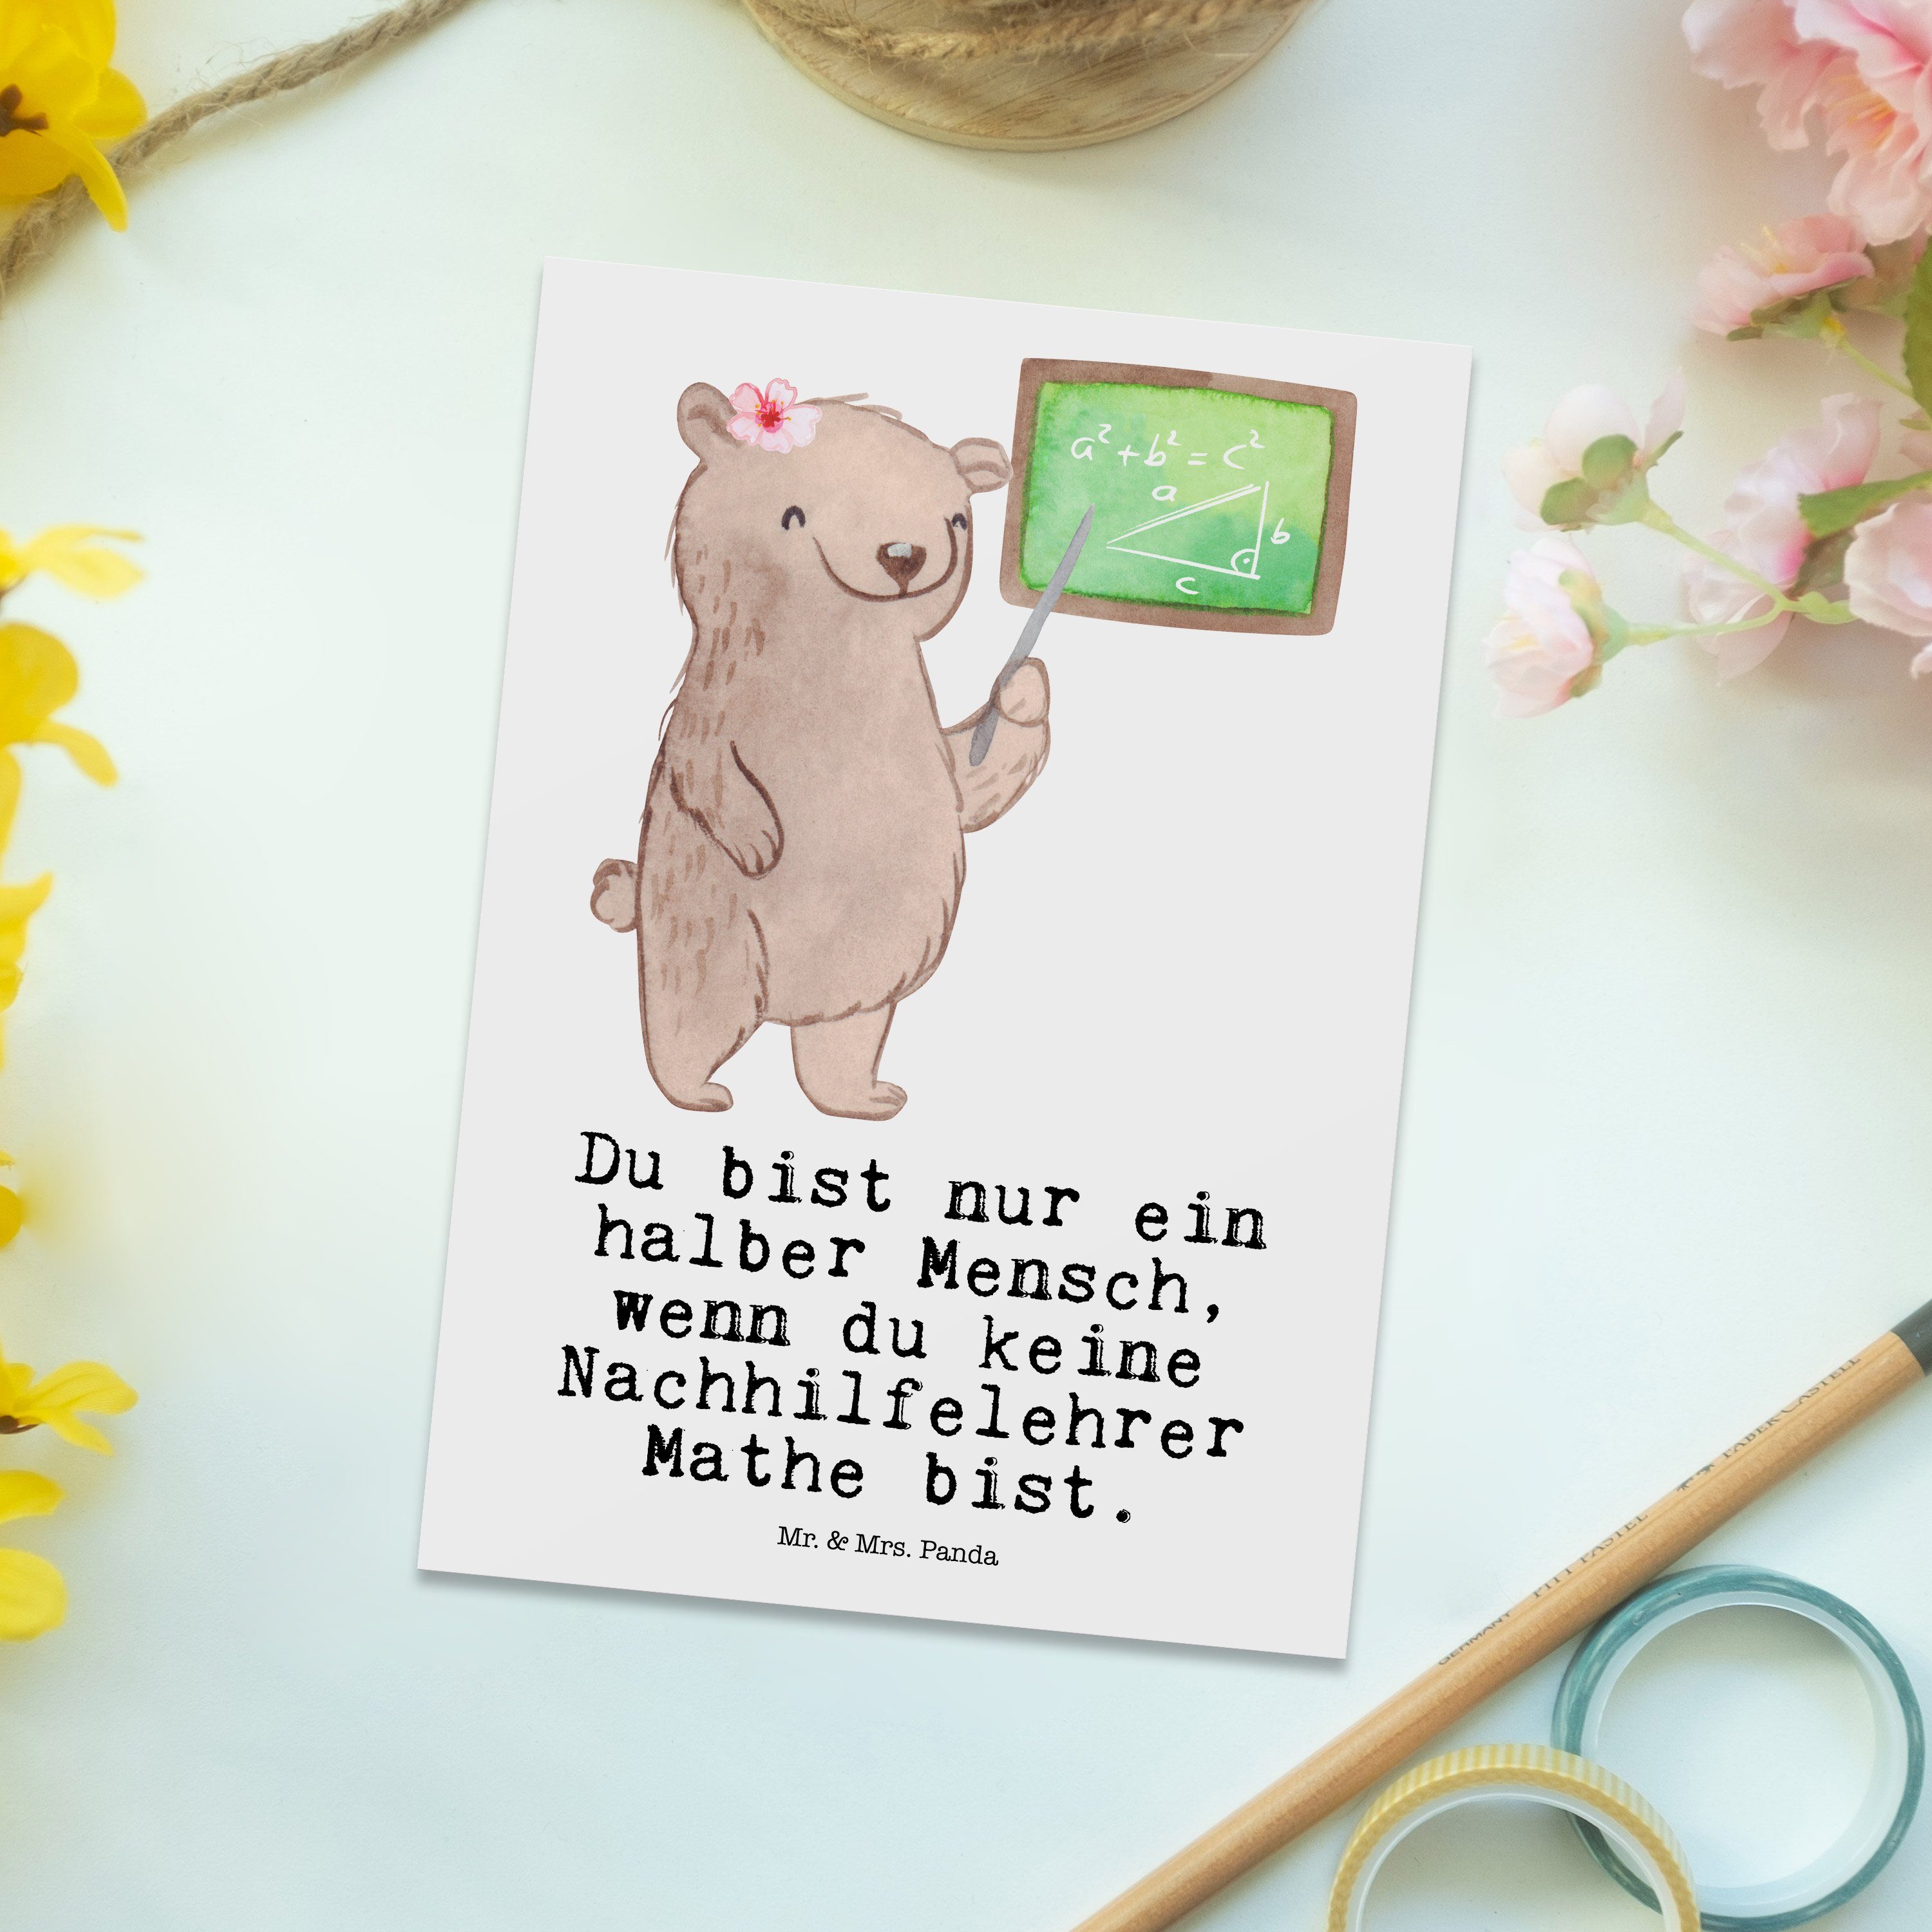 Mr. & Mathe Weiß mit Postkarte - - Geschenkkarte, Geschenk, Herz Nachhilfelehrer Mrs. Einl Panda